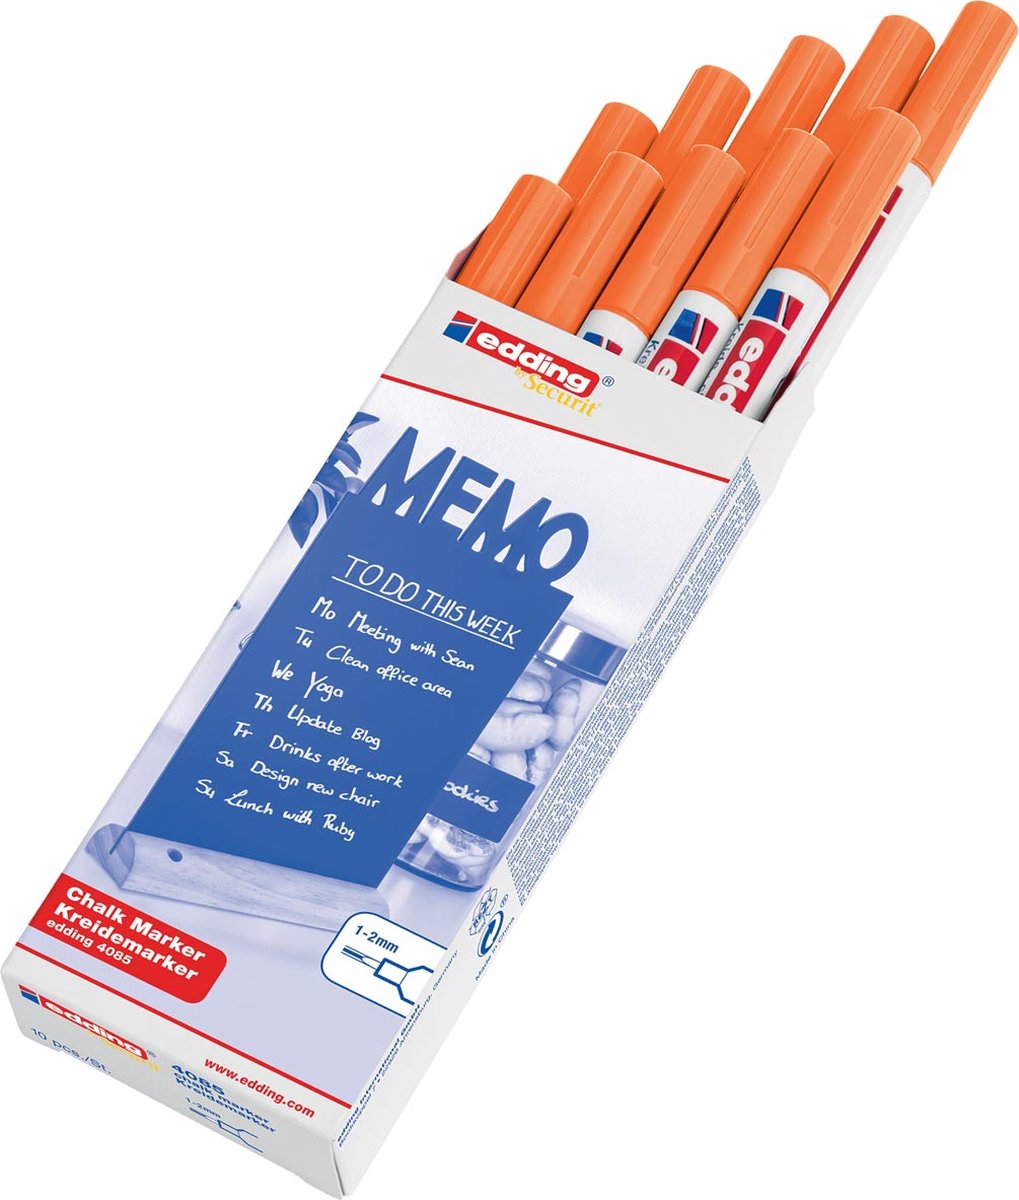 Krijtstift edding by Securit 4085 rond 1-2mm neon oranje - 10 stuks - 10 stuks